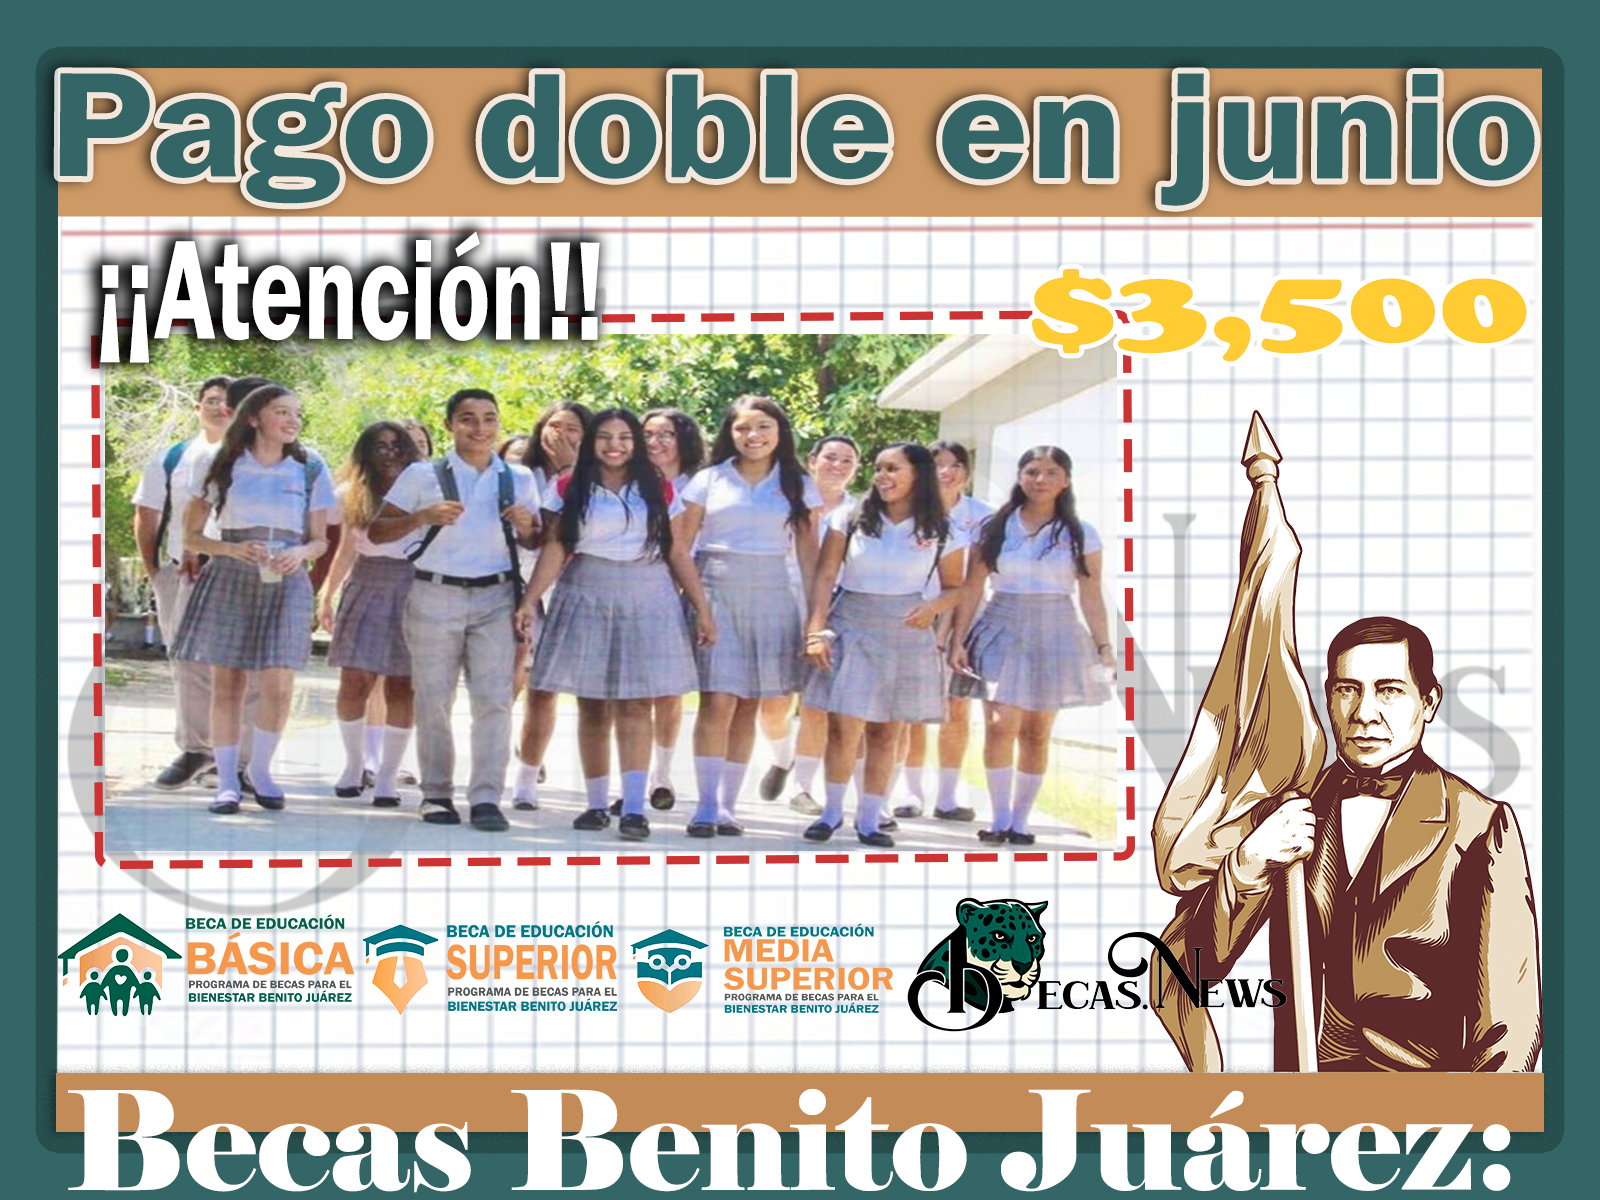 Becas Benito Juárez: ¡¡Atención!! Pago doble de $3,500 en junio